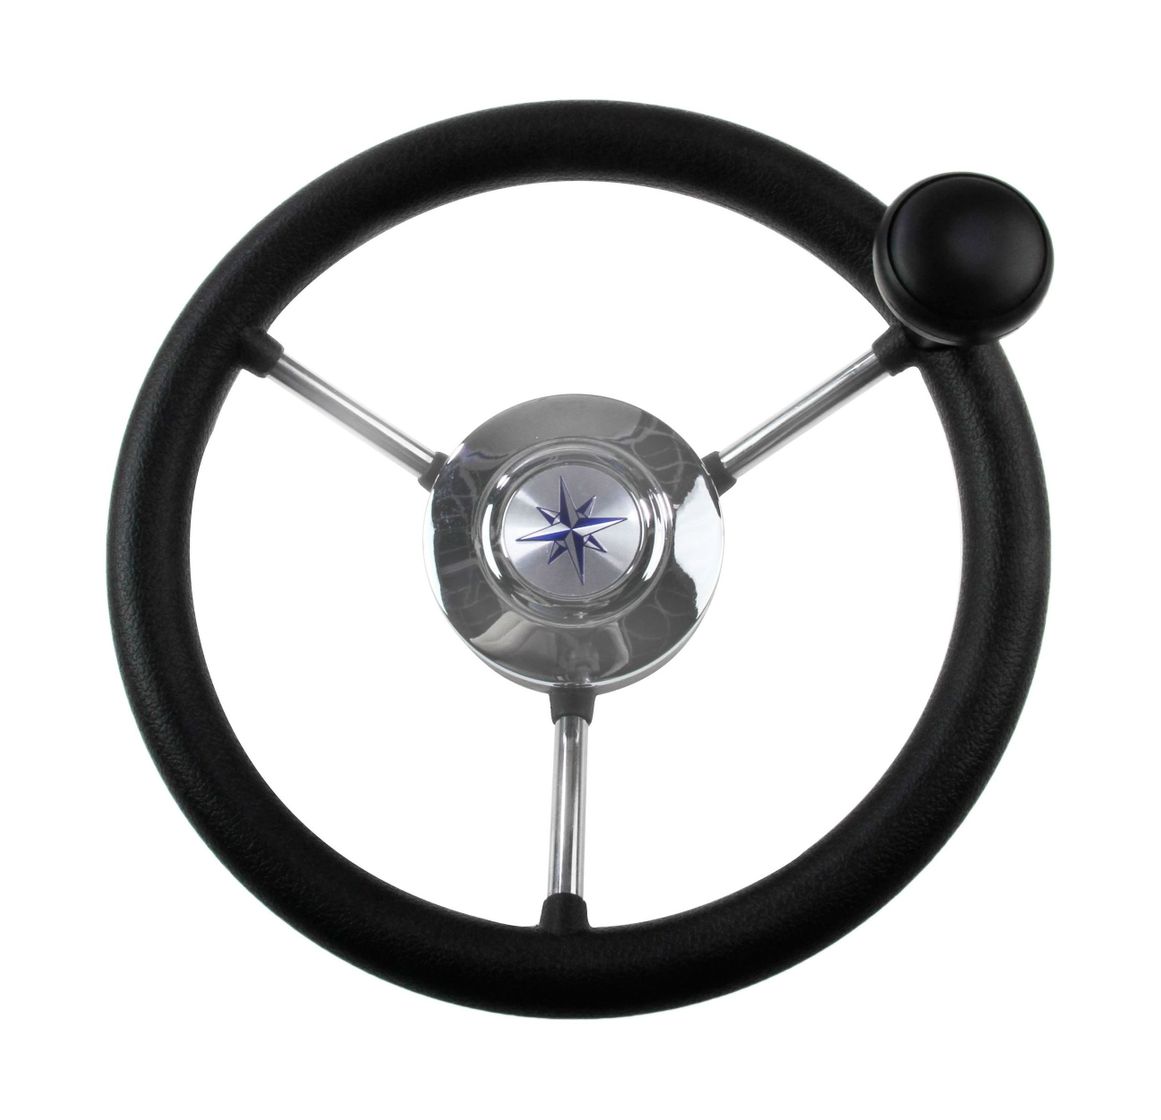 Рулевое колесо LIPARI обод черный, спицы серебряные д. 280 мм со спинером Volanti Luisi VN828050-01